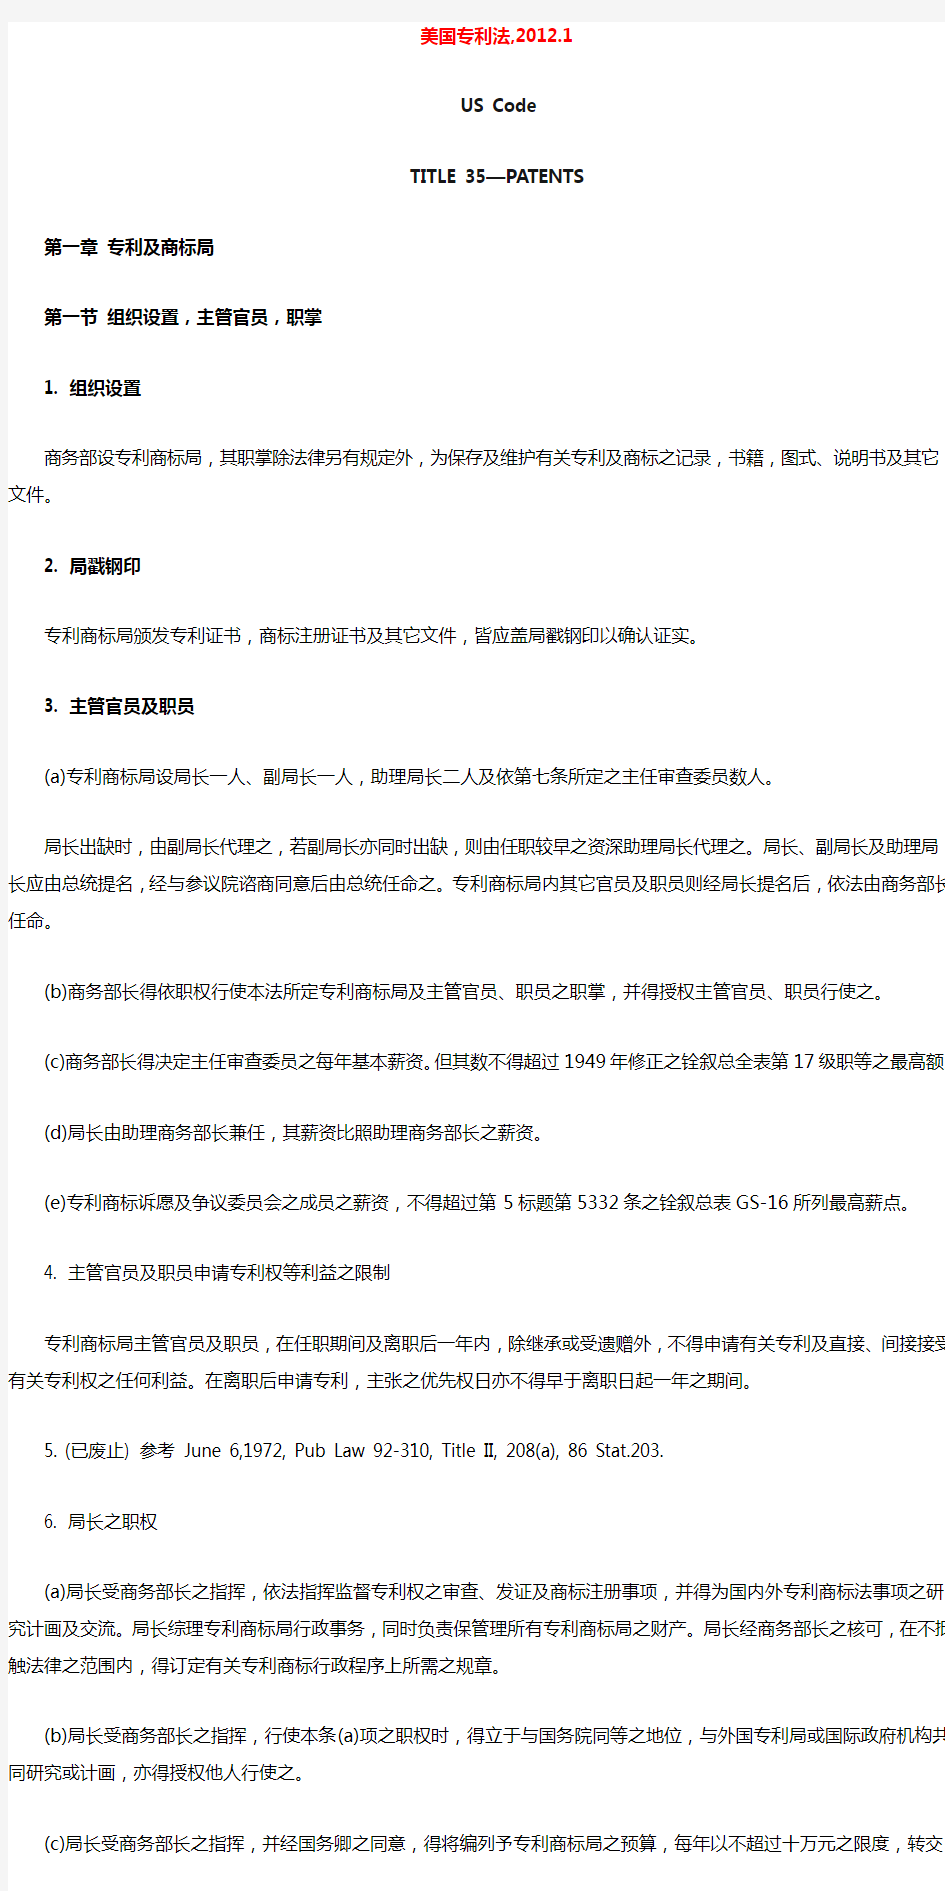 美国专利法, 2012.1 (中文)